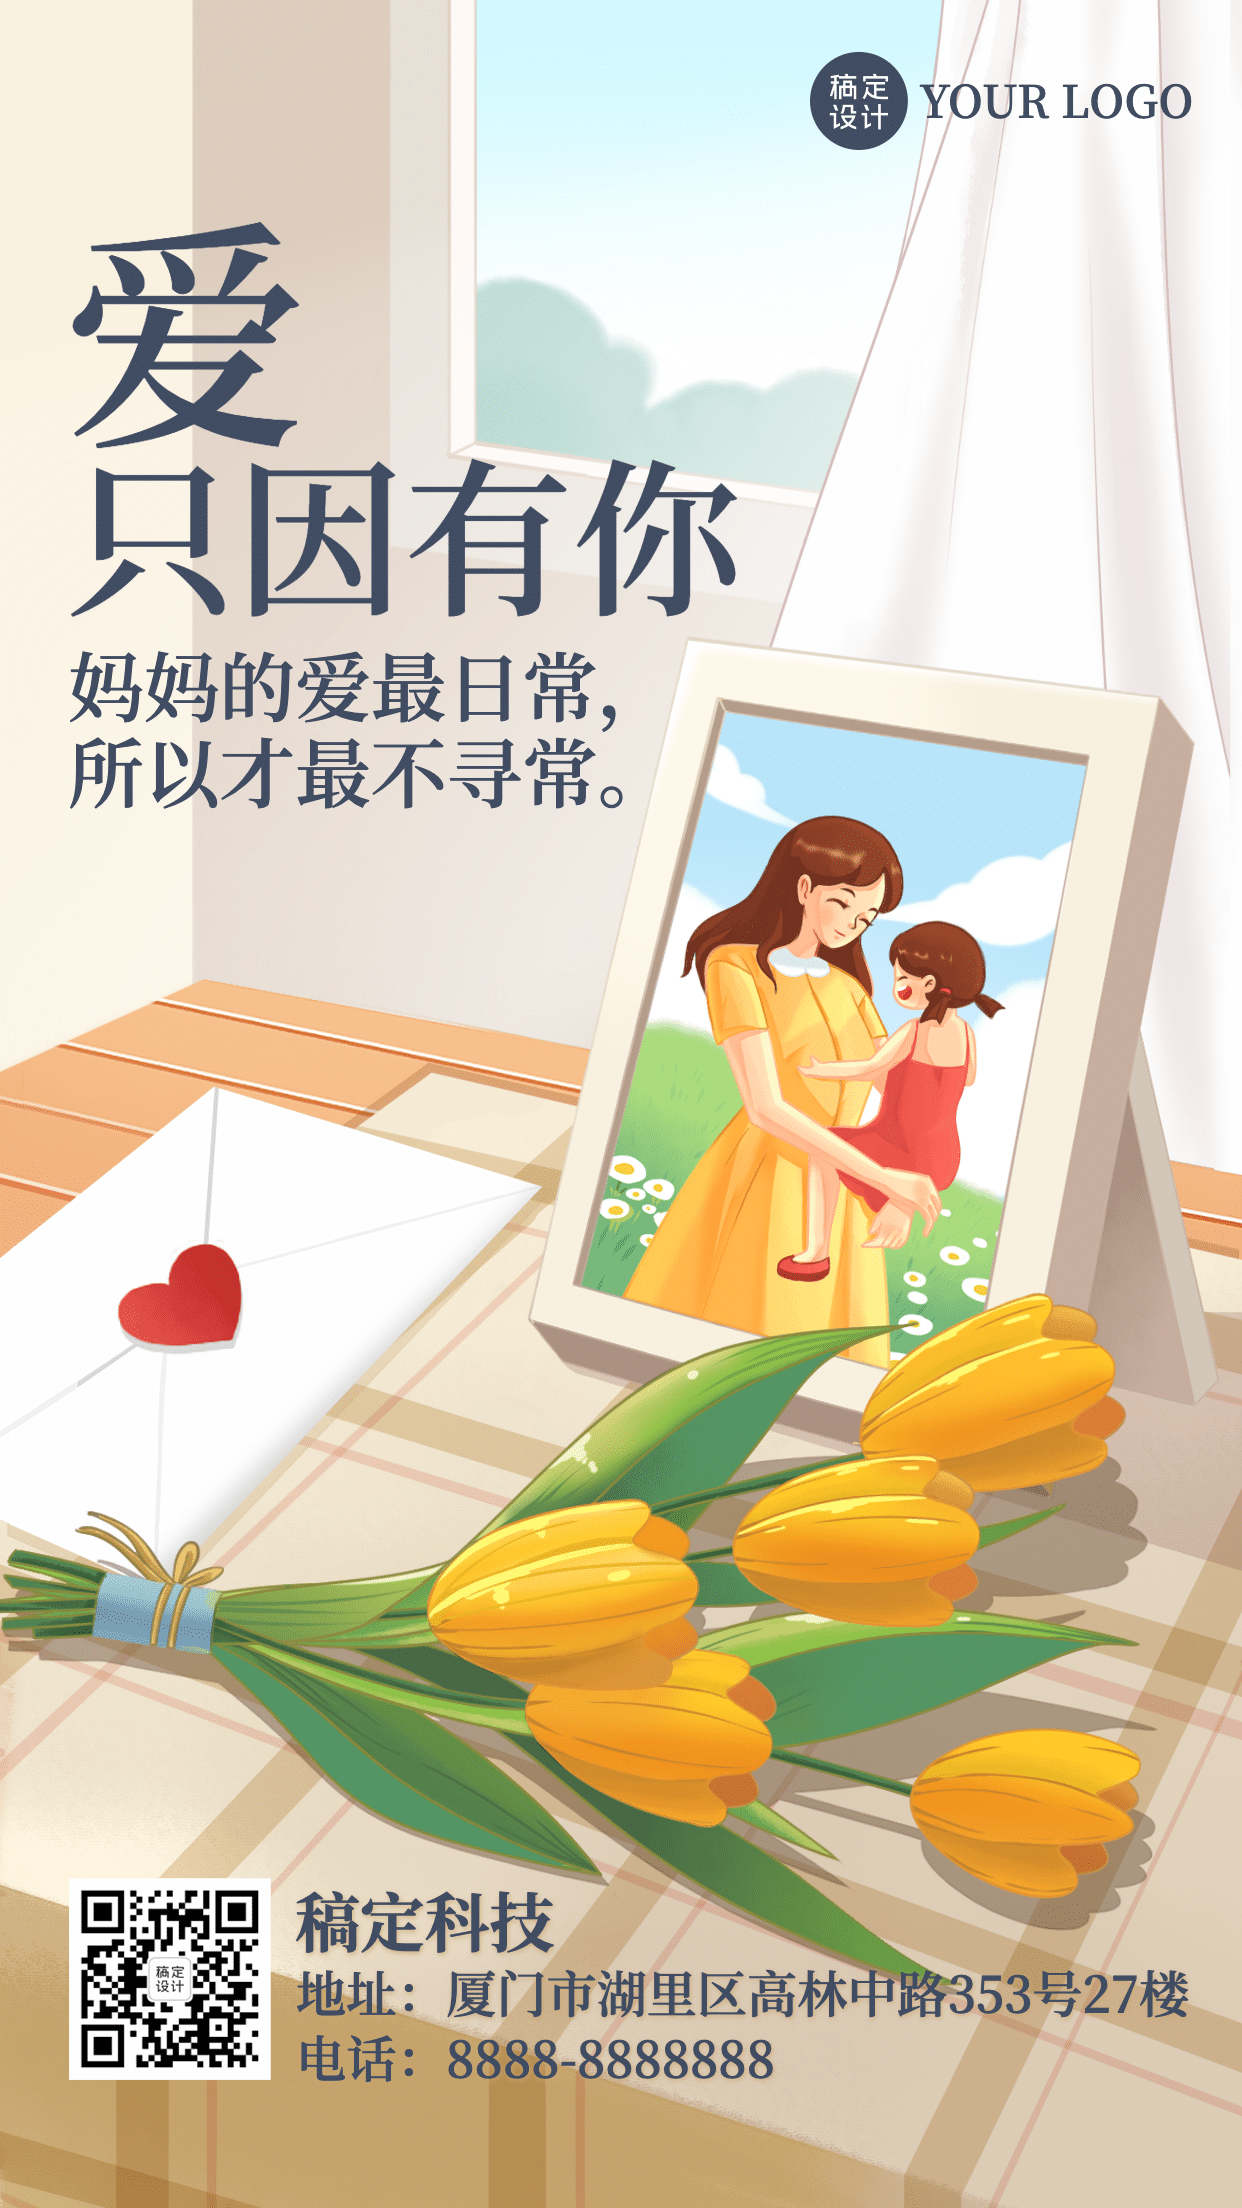 母亲节祝福感恩妈妈温馨手机海报_图片模板素材-稿定设计